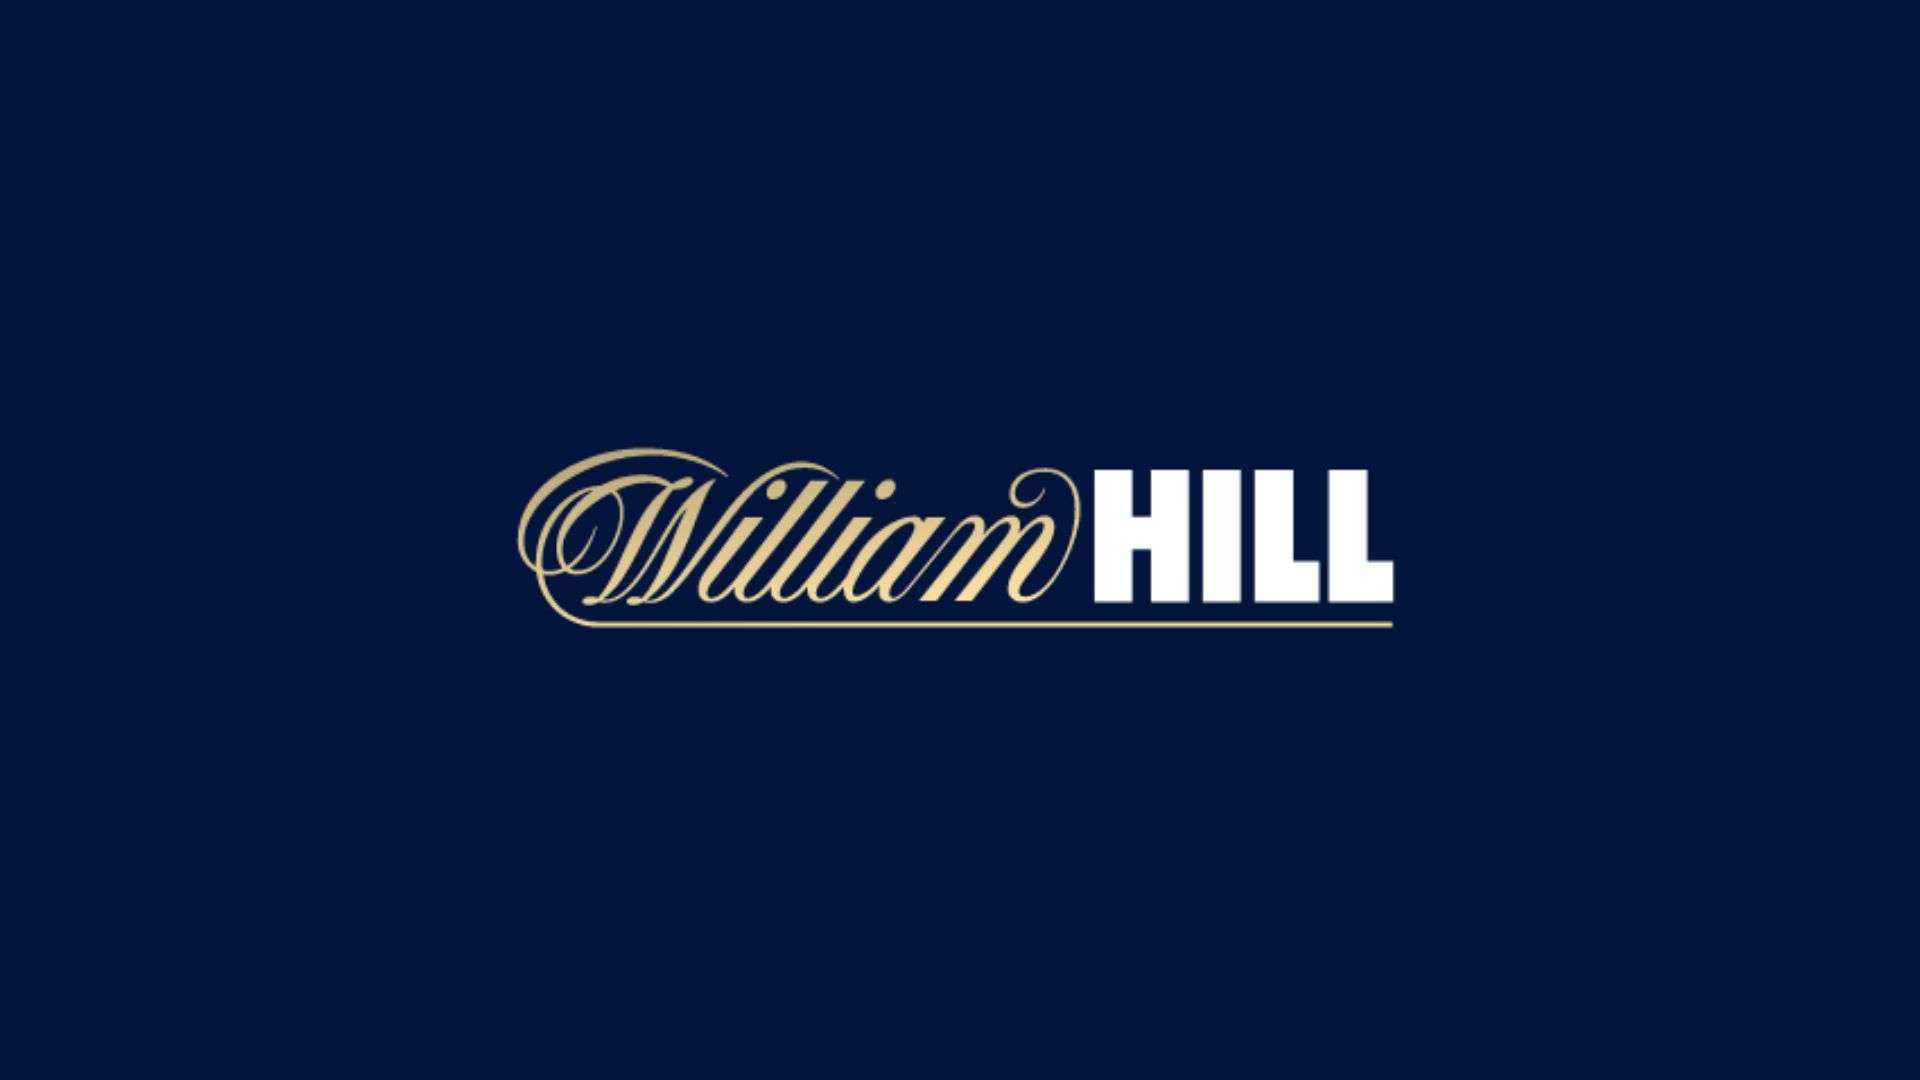 codice promozionale william hill